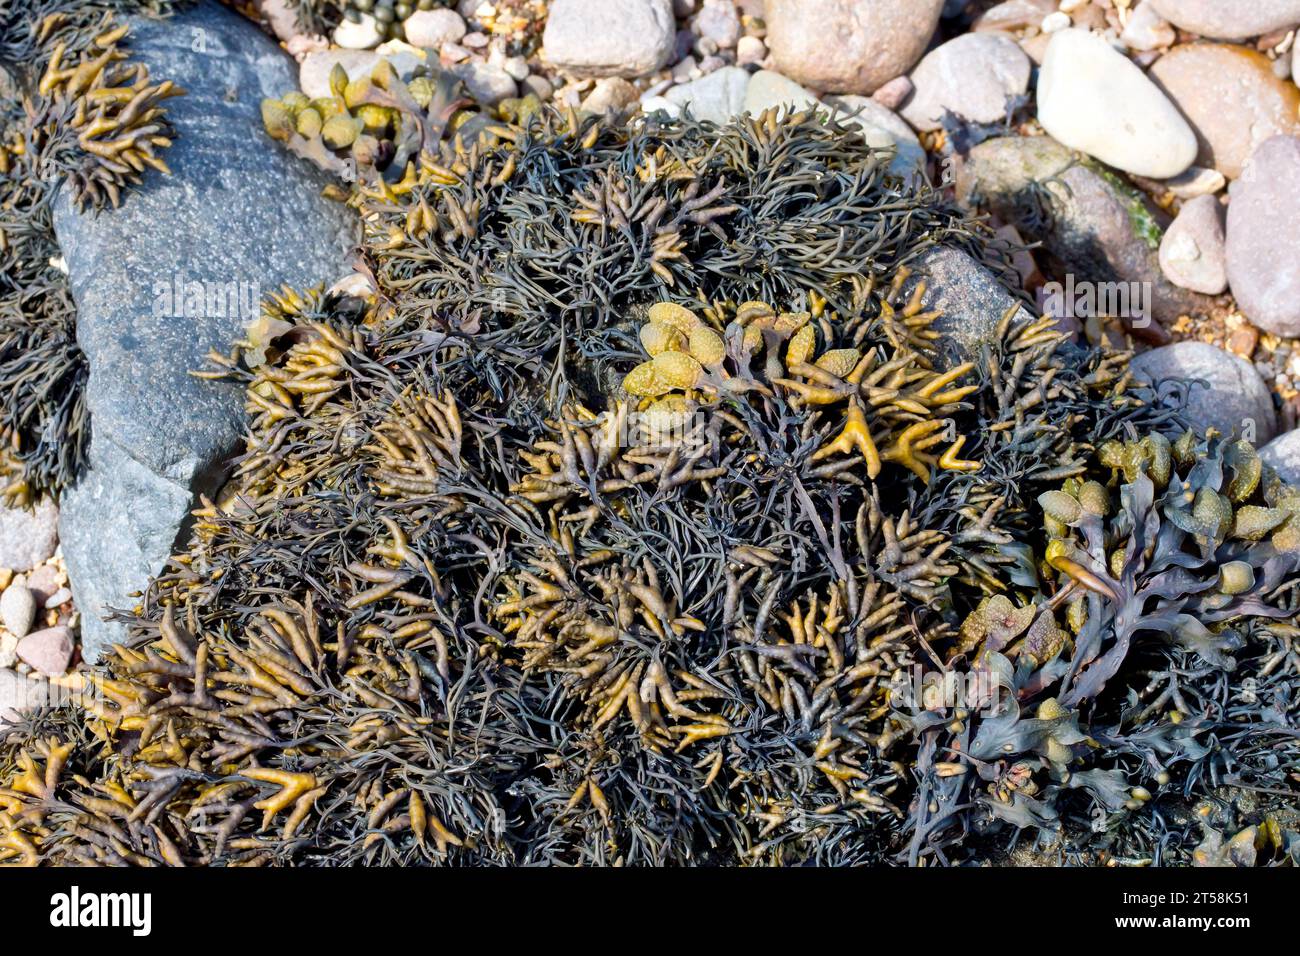 Nahaufnahme einer Alge oder Meeresalge, die über einem Felsen am Strand wächst, höchstwahrscheinlich gekanntes Wrack (pelvetia canaliculata). Stockfoto